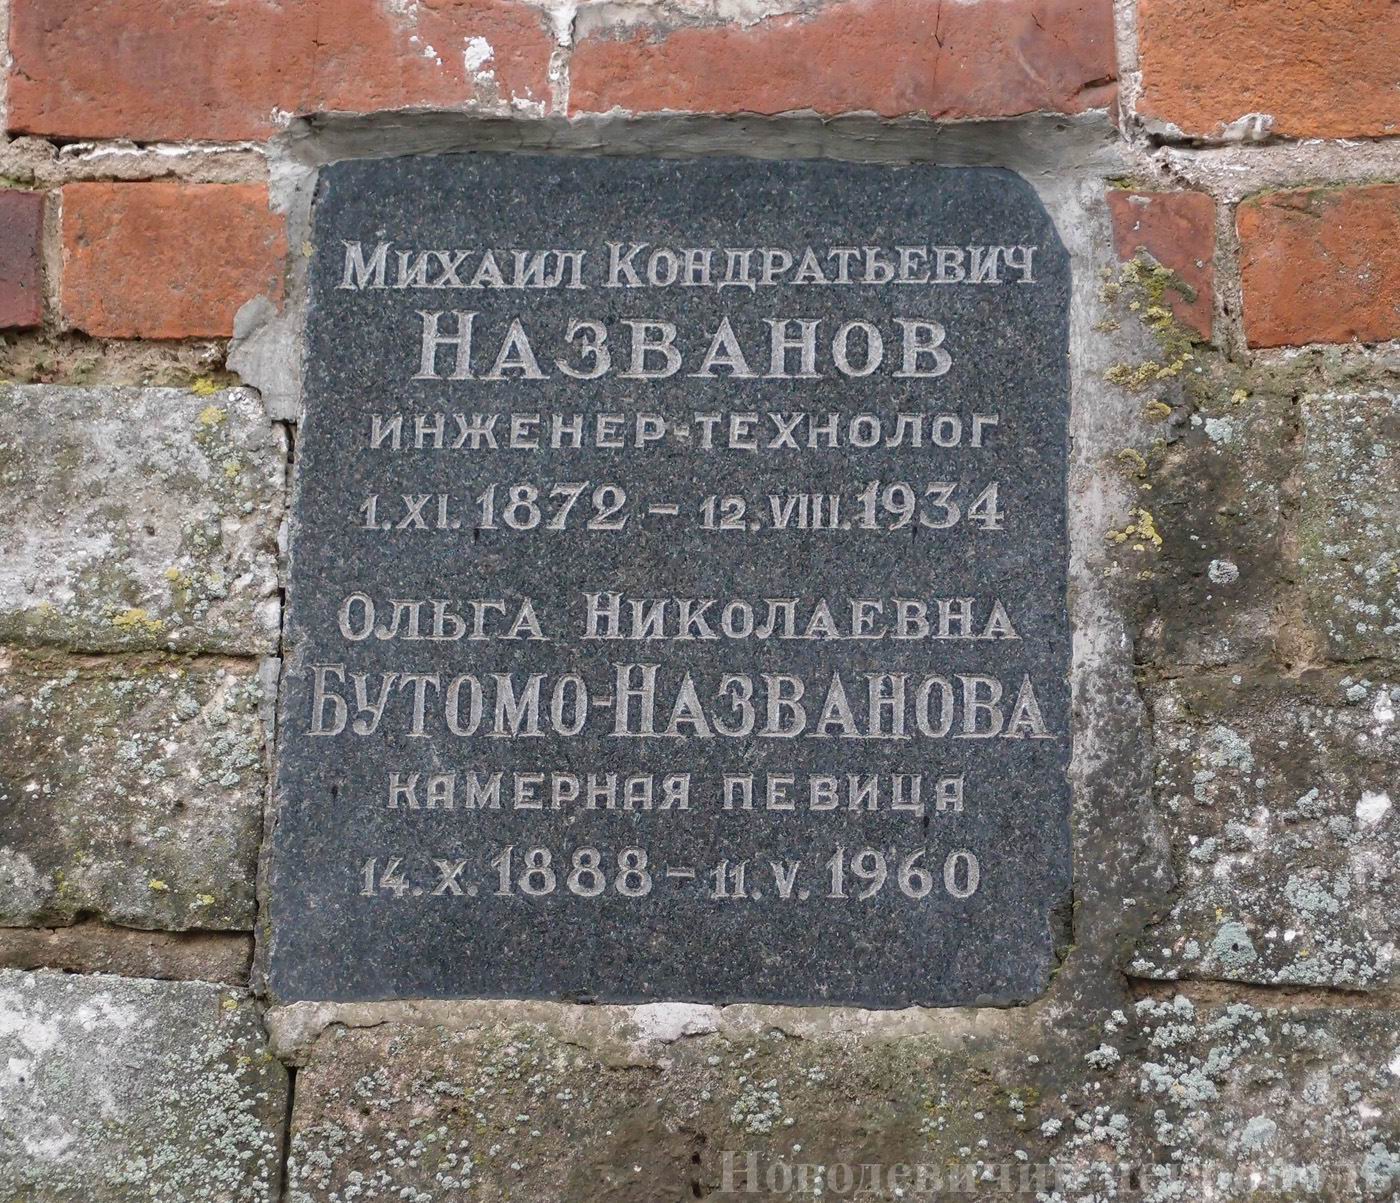 Плита на нише Названова М.К. (1872-1934) и Бутомо-Названовой О.Н. (1888-1960), на Новодевичьем кладбище (колумбарий [2]-30).